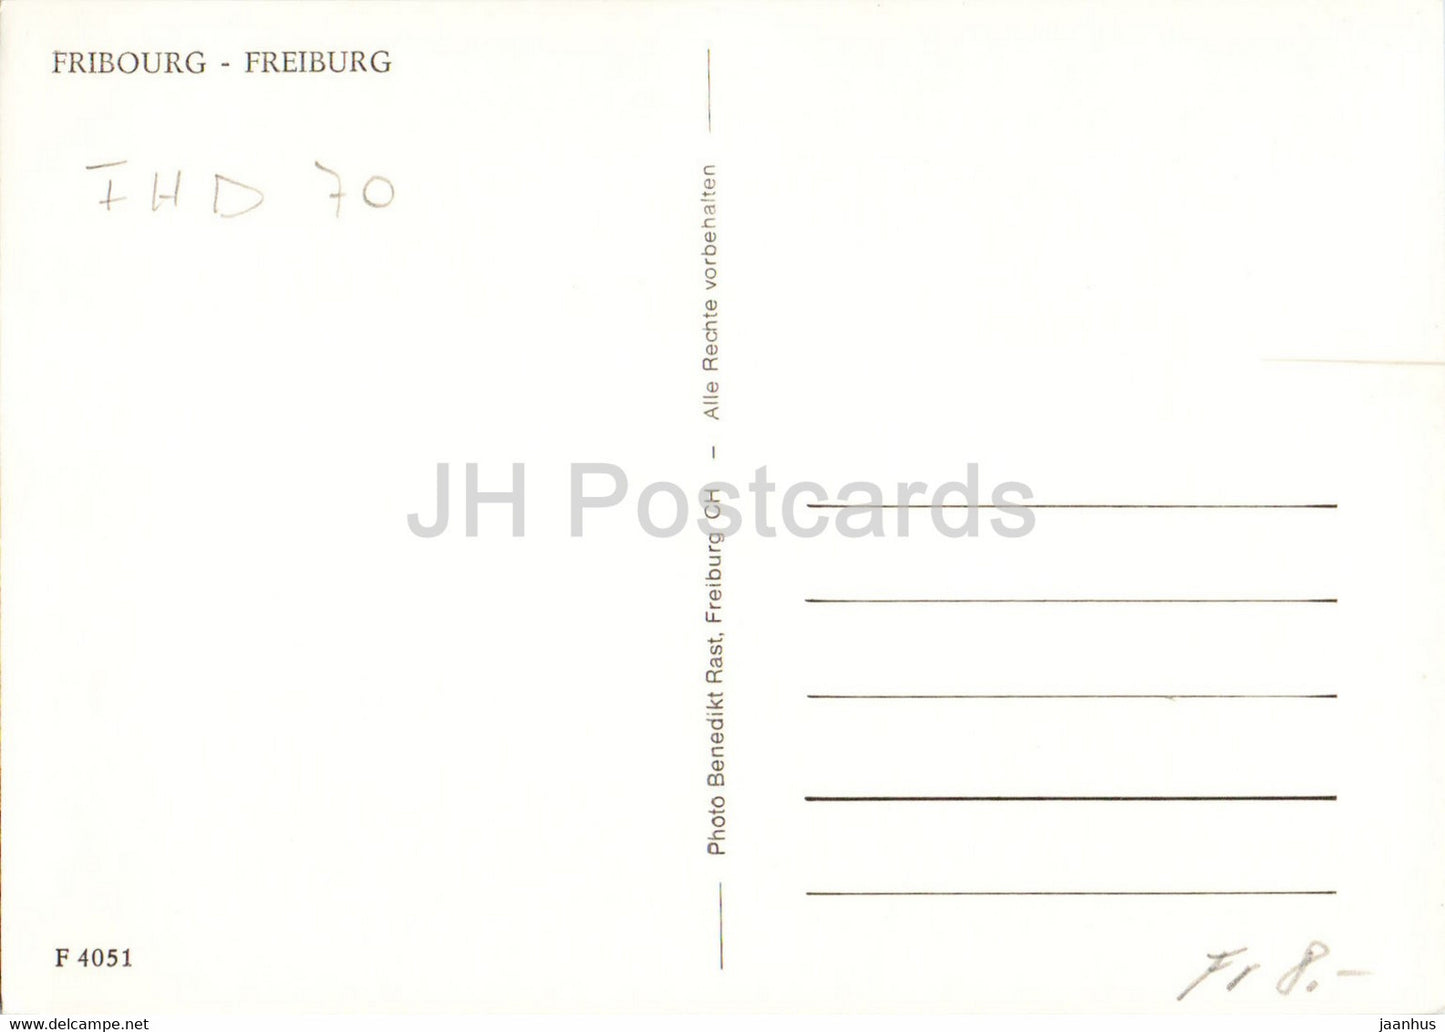 Fribourg - Freiburg - 4051 - old postcard - Switzerland - used